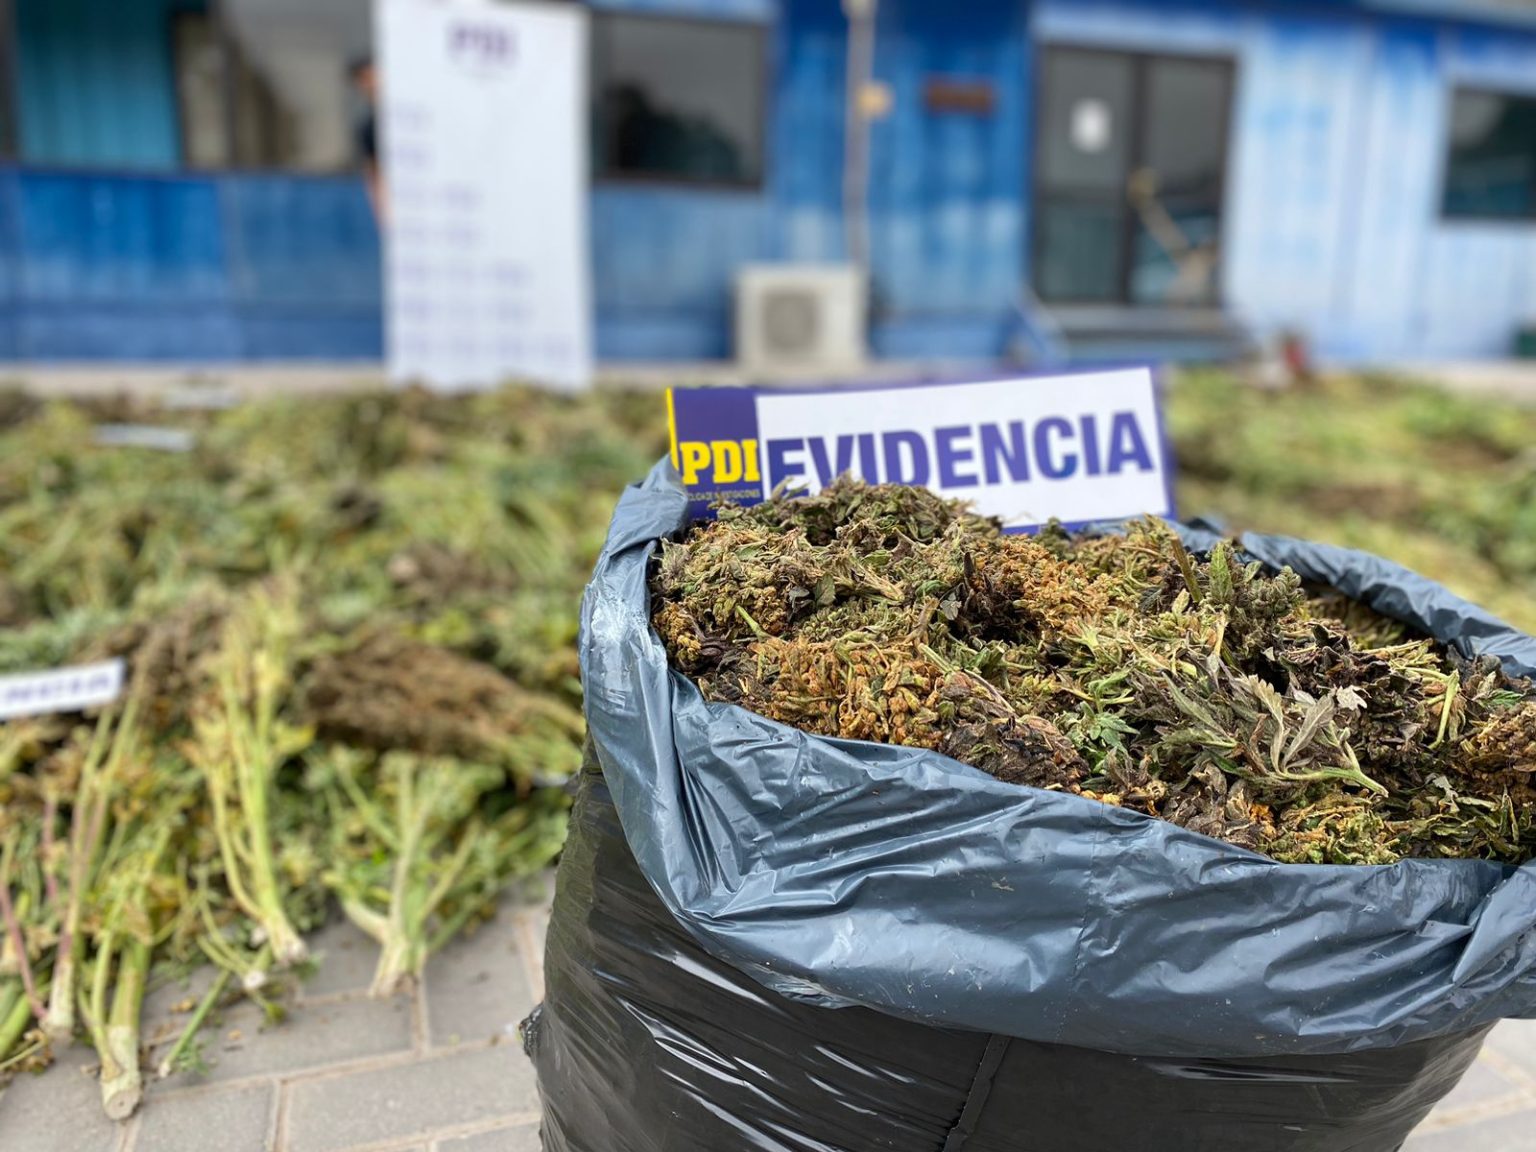 PDI realizó nuevo hallazgo de plantación de Cannabis en sector precordillerano de Atacama